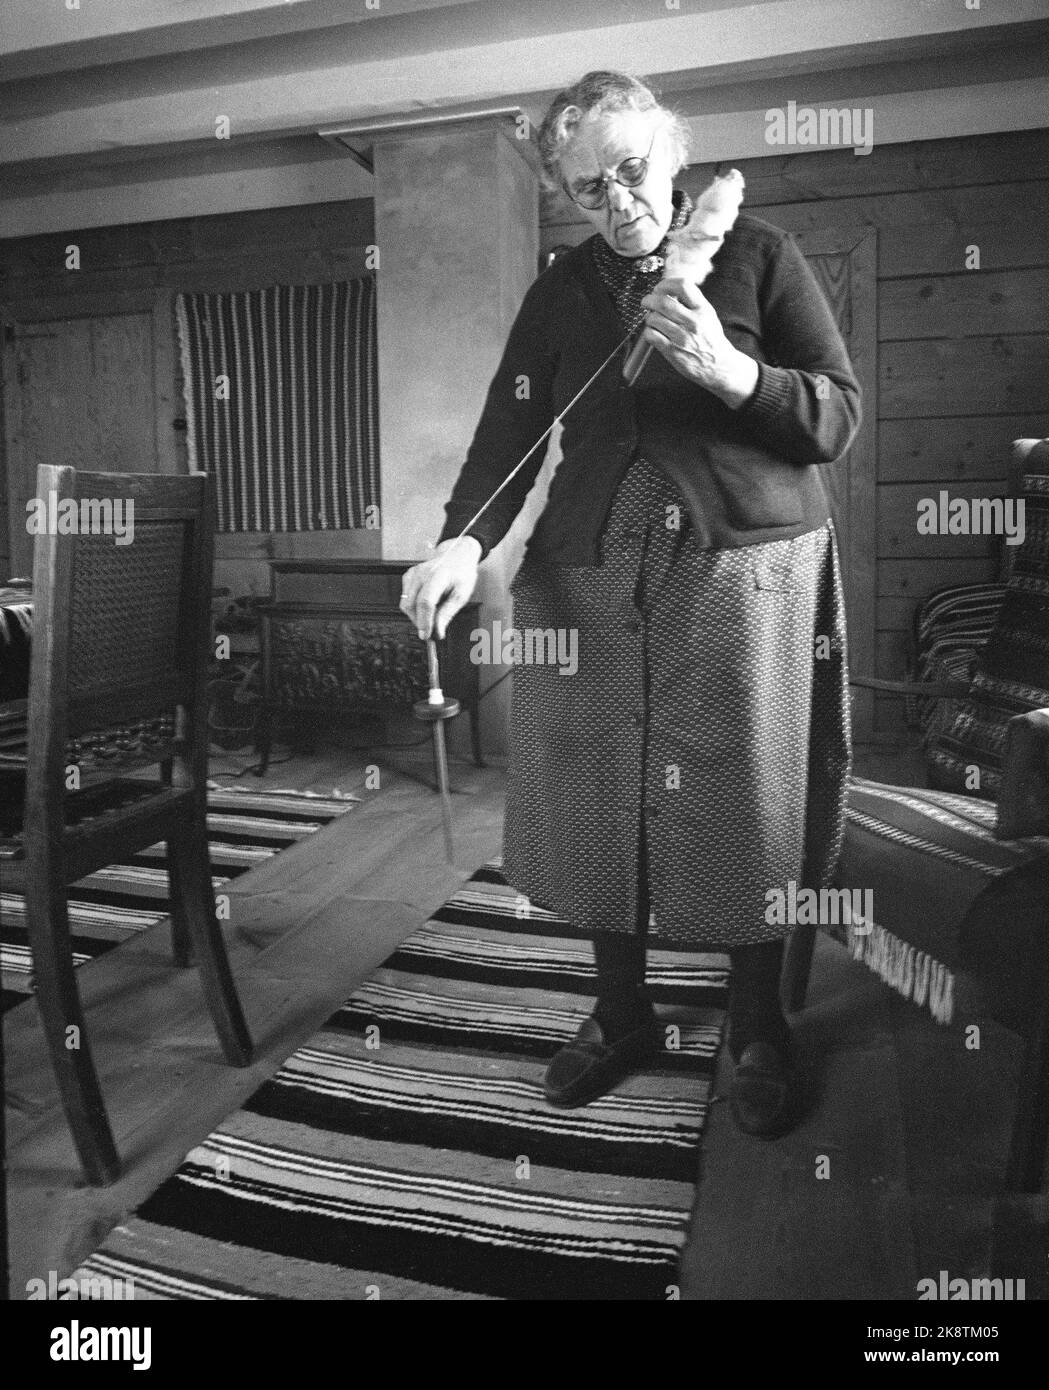 Jølster 23. Februar 1963. Helga Hamar in Jølster im Sunnfjord spinnt das  Garn auf die alte Weise. Hier mit einem handlichen. Foto: Sverre A.  Børretzen / Aktuell / NTB Stockfotografie - Alamy